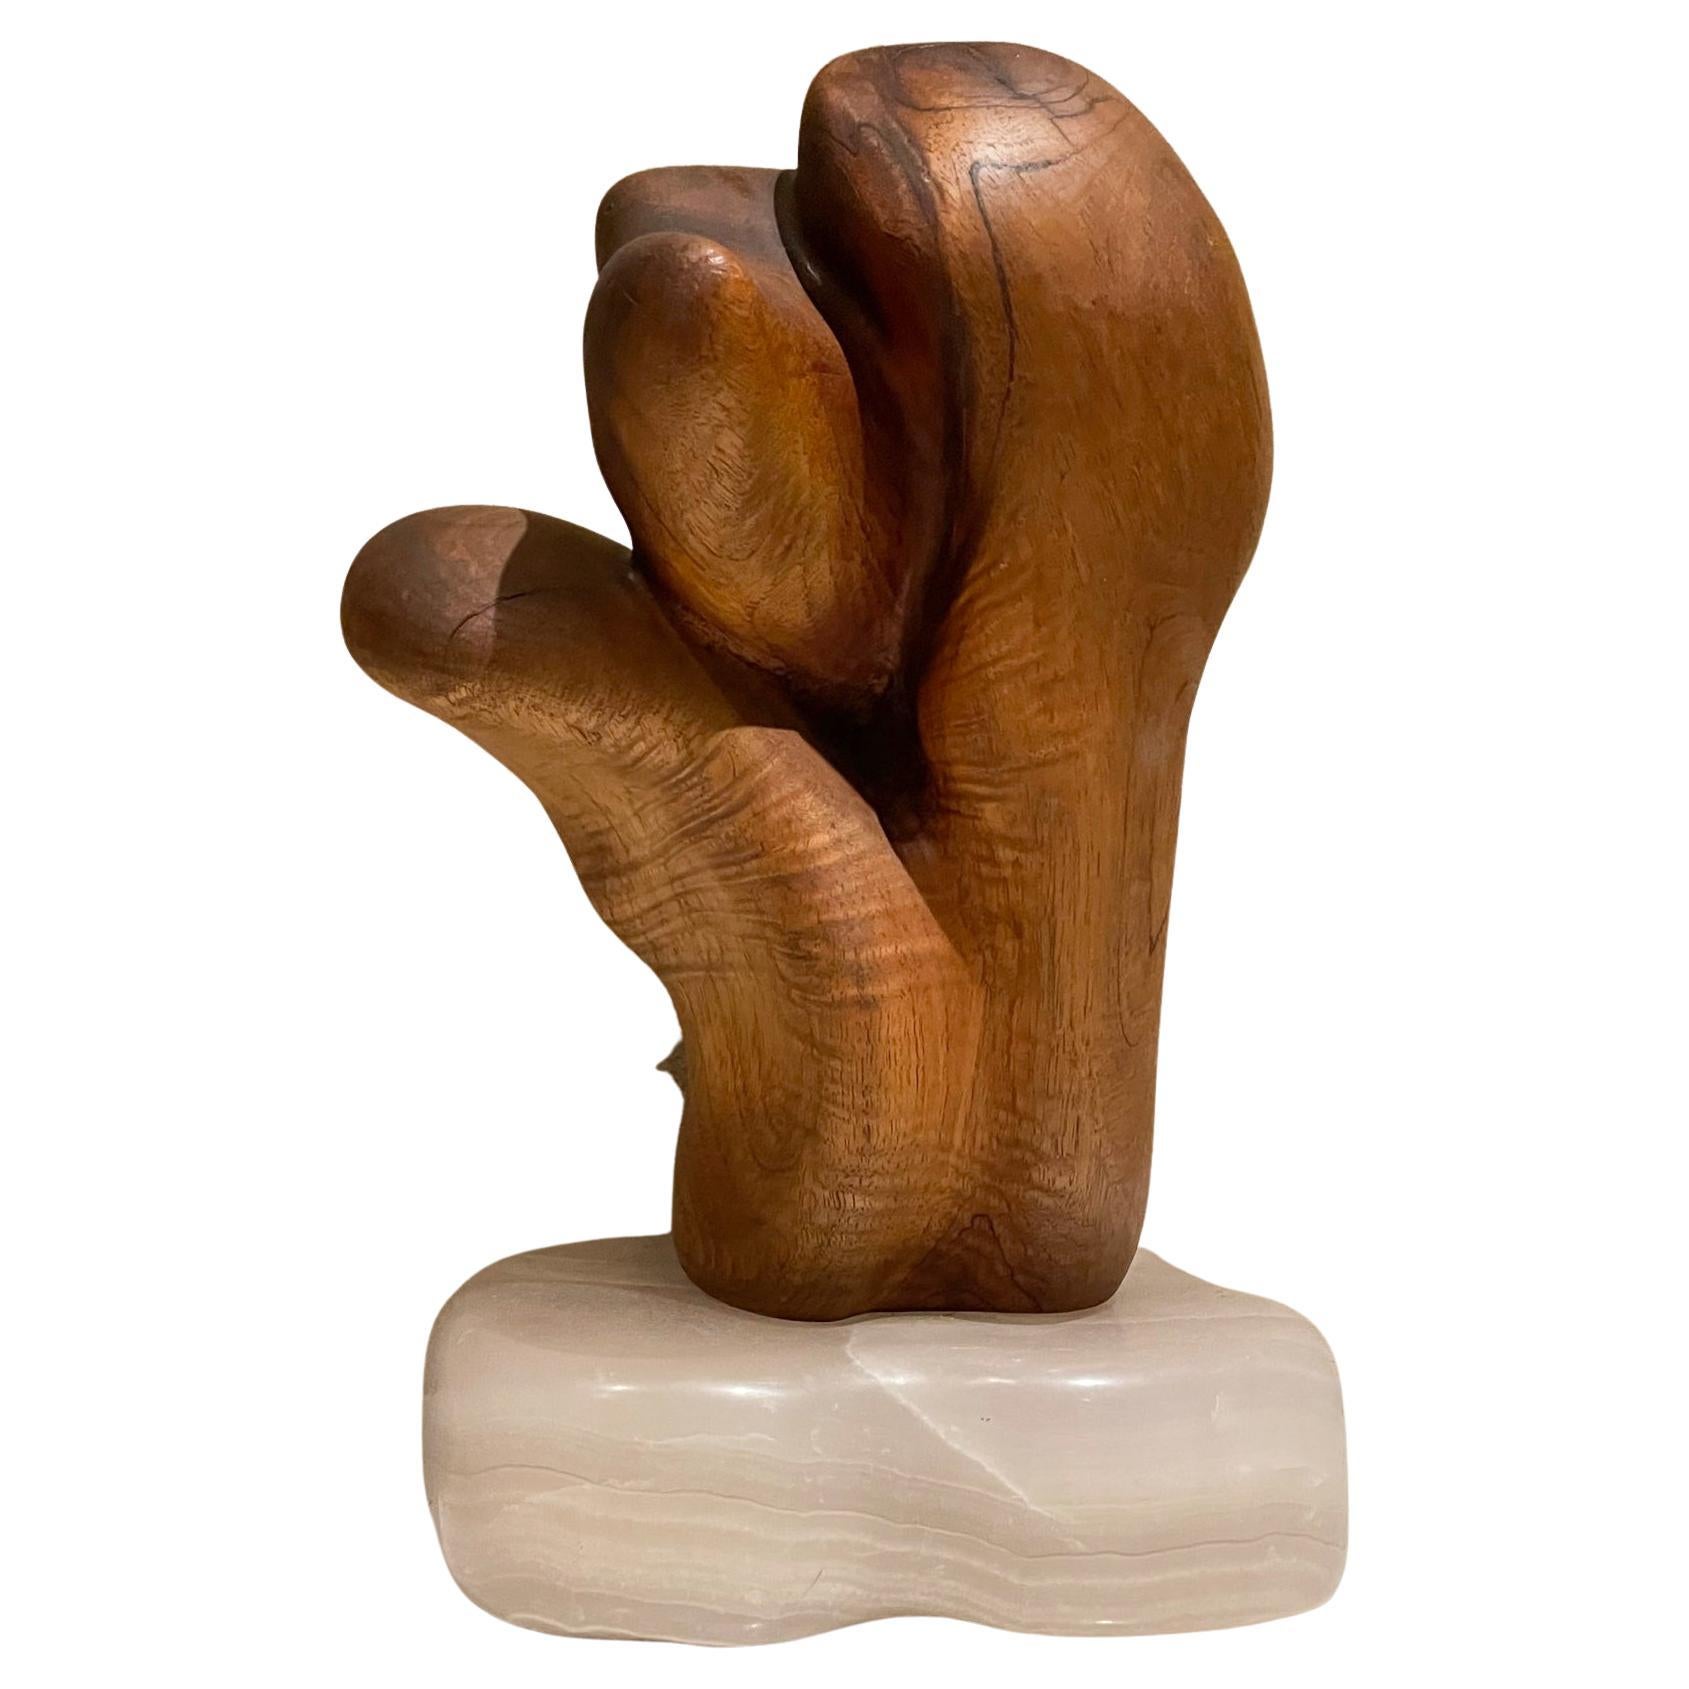 Exquisite Holzmaser-Skulptur auf durchscheinendem Steinsockel in organischer Form